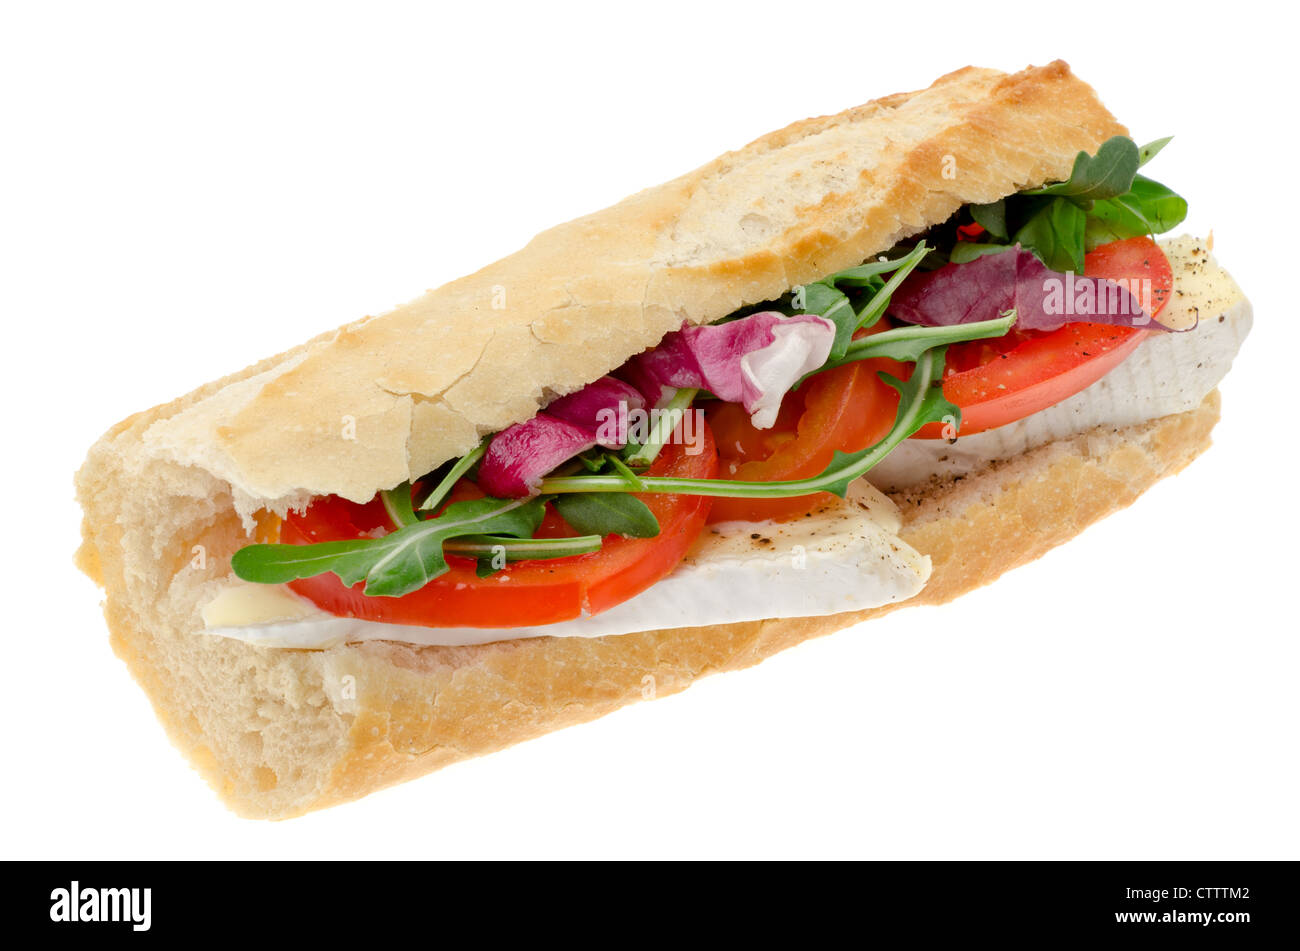 Fromage Brie et salade sandwich baguette - studio photo avec un fond blanc Banque D'Images